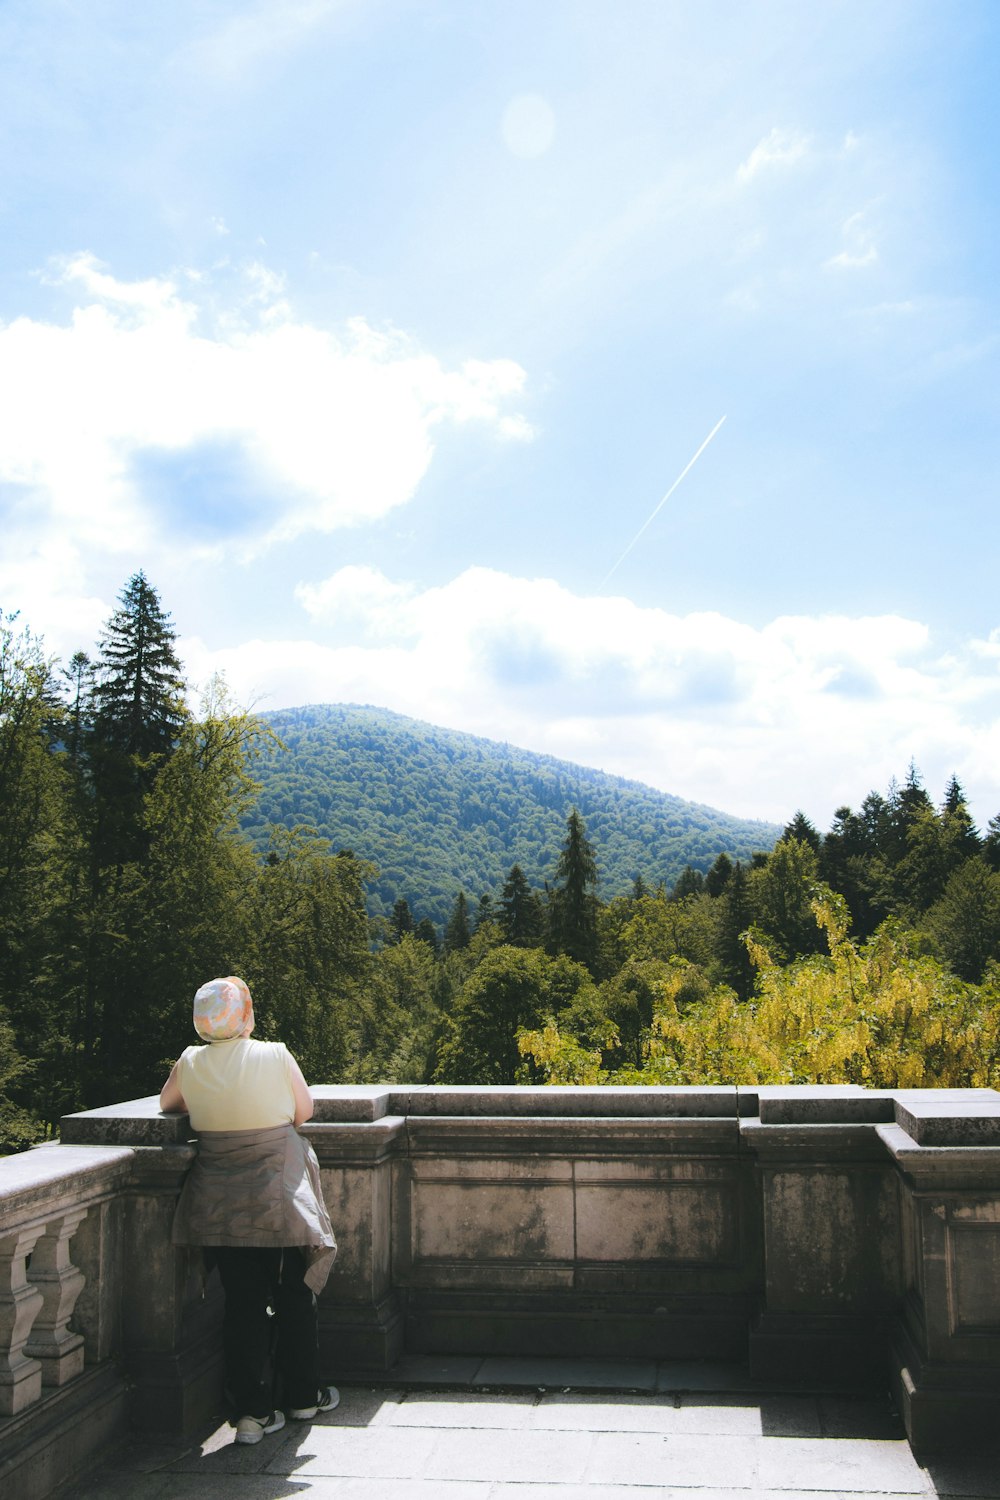 Mujer en chaqueta blanca sentada en banco de madera gris mirando montañas verdes durante el día